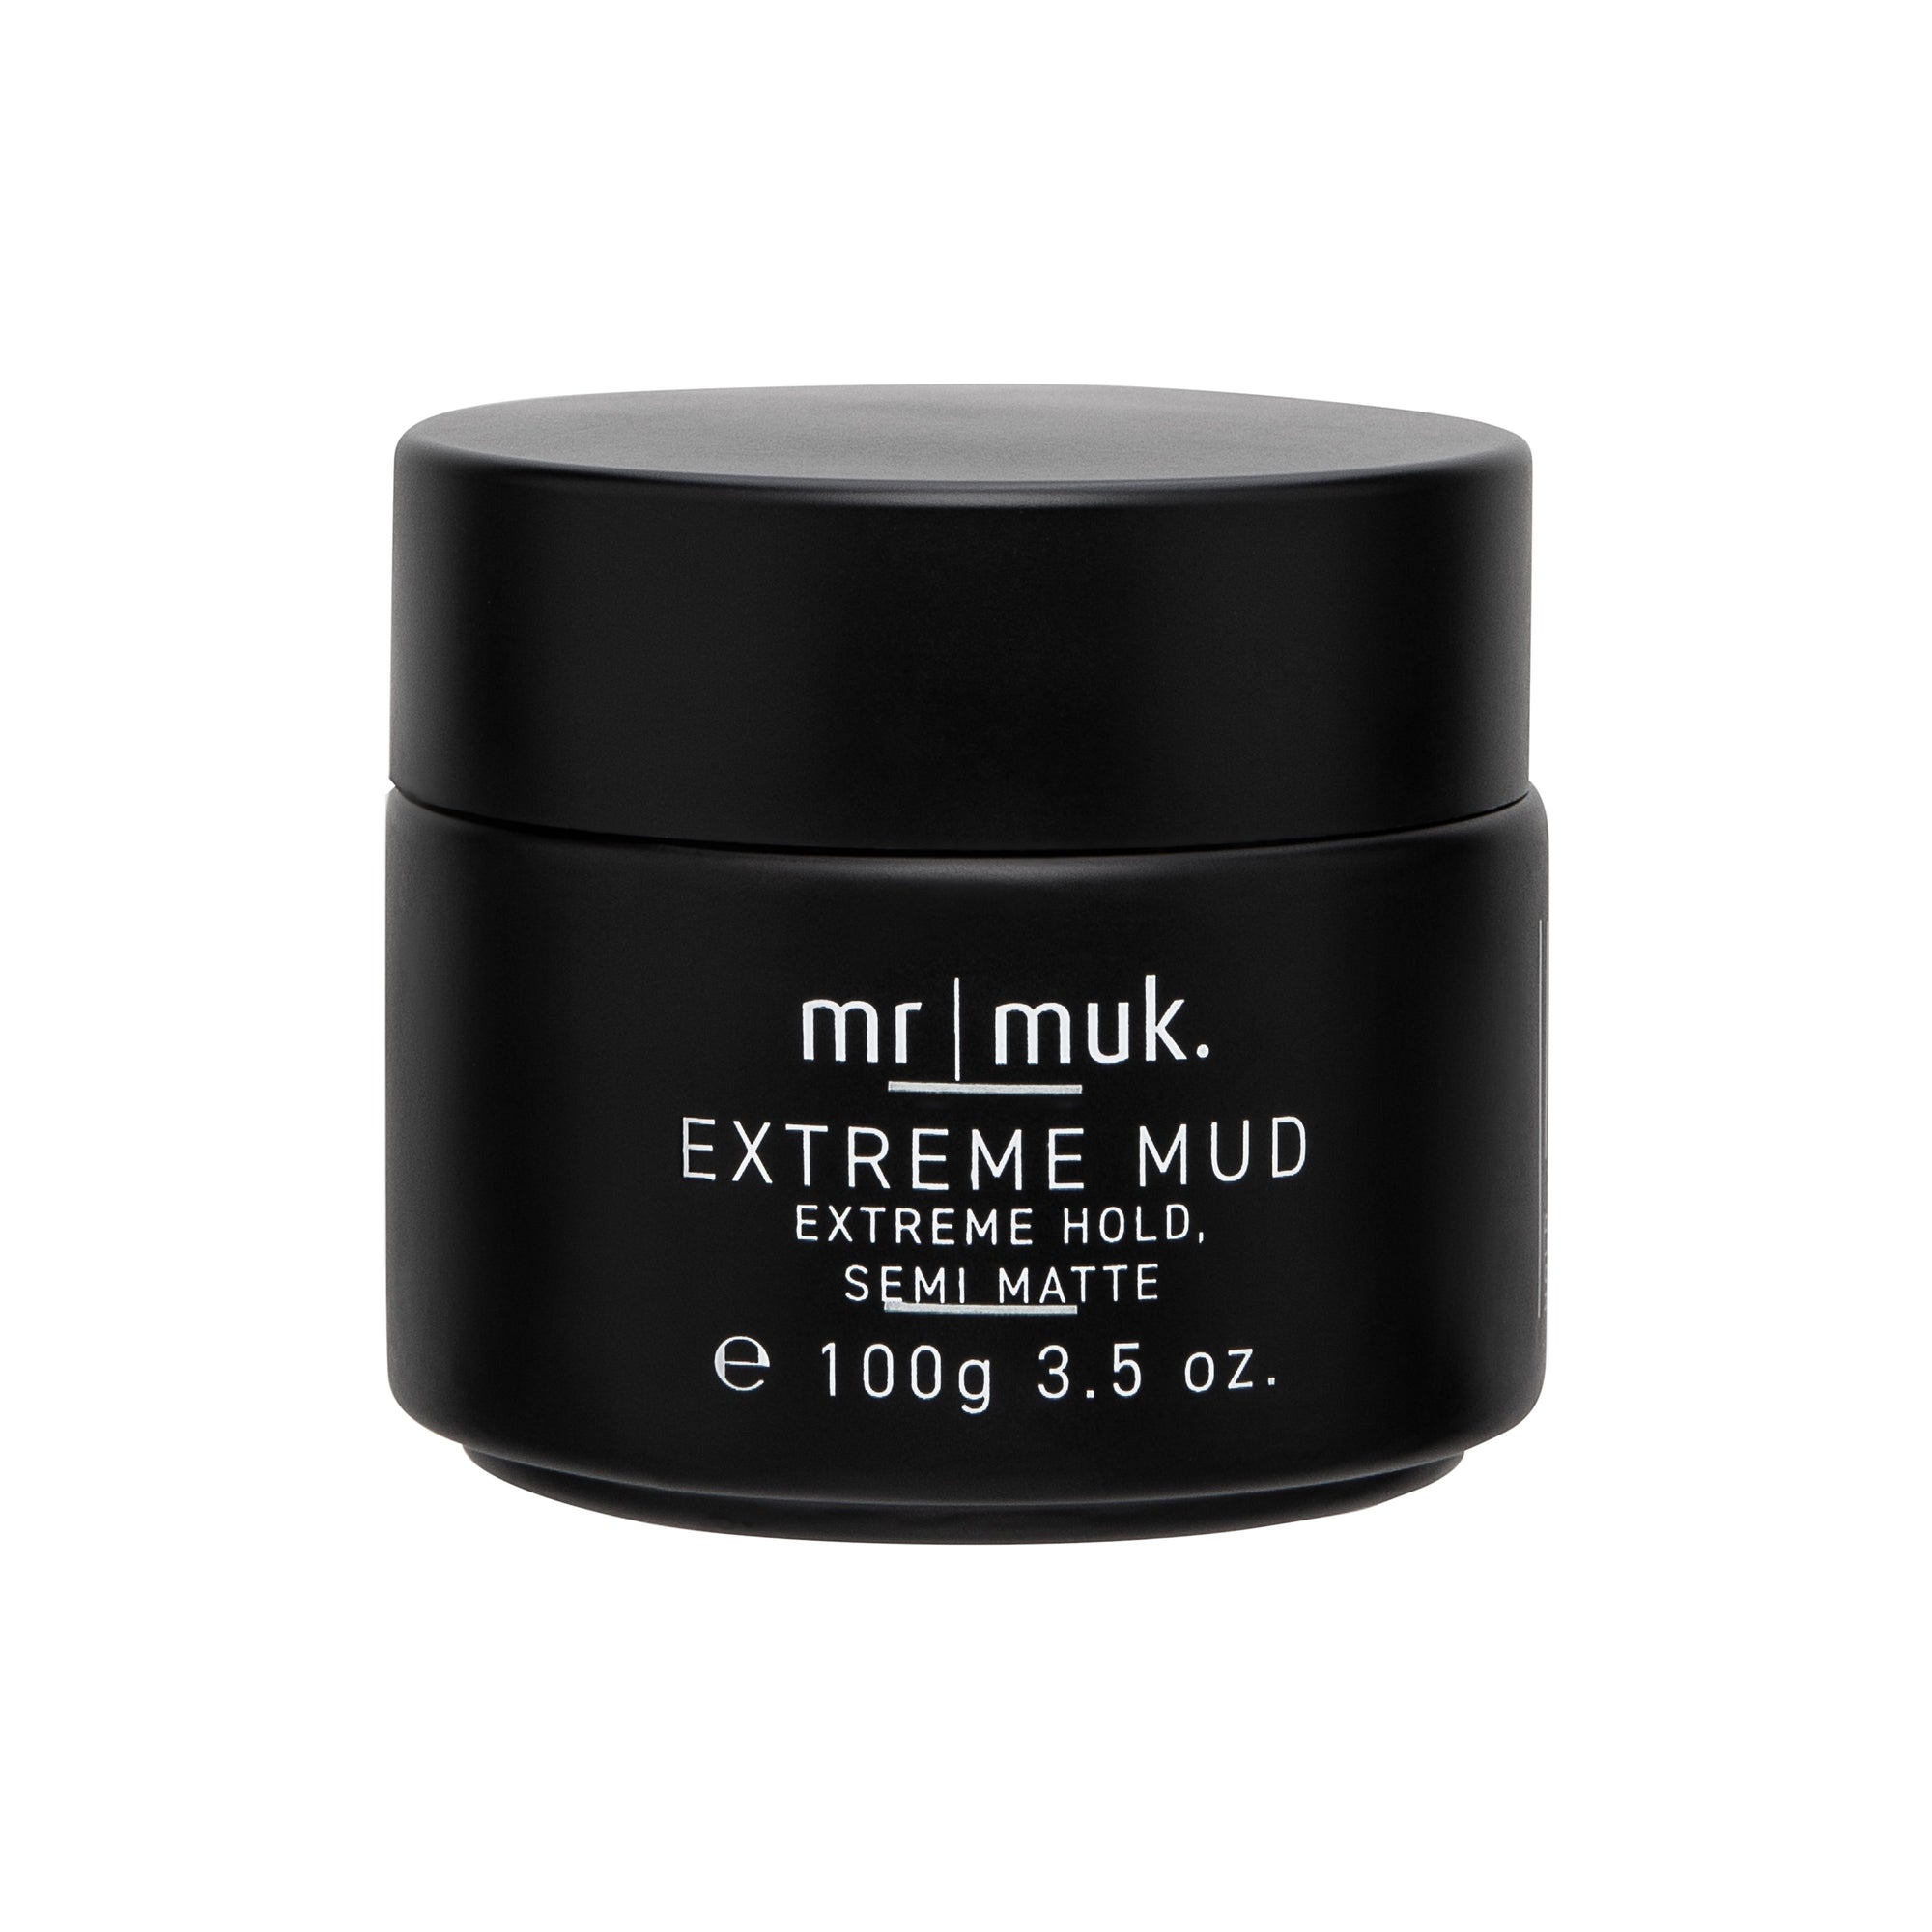 Mr Muk Extreme Hold Semi Matte Mud - 100g